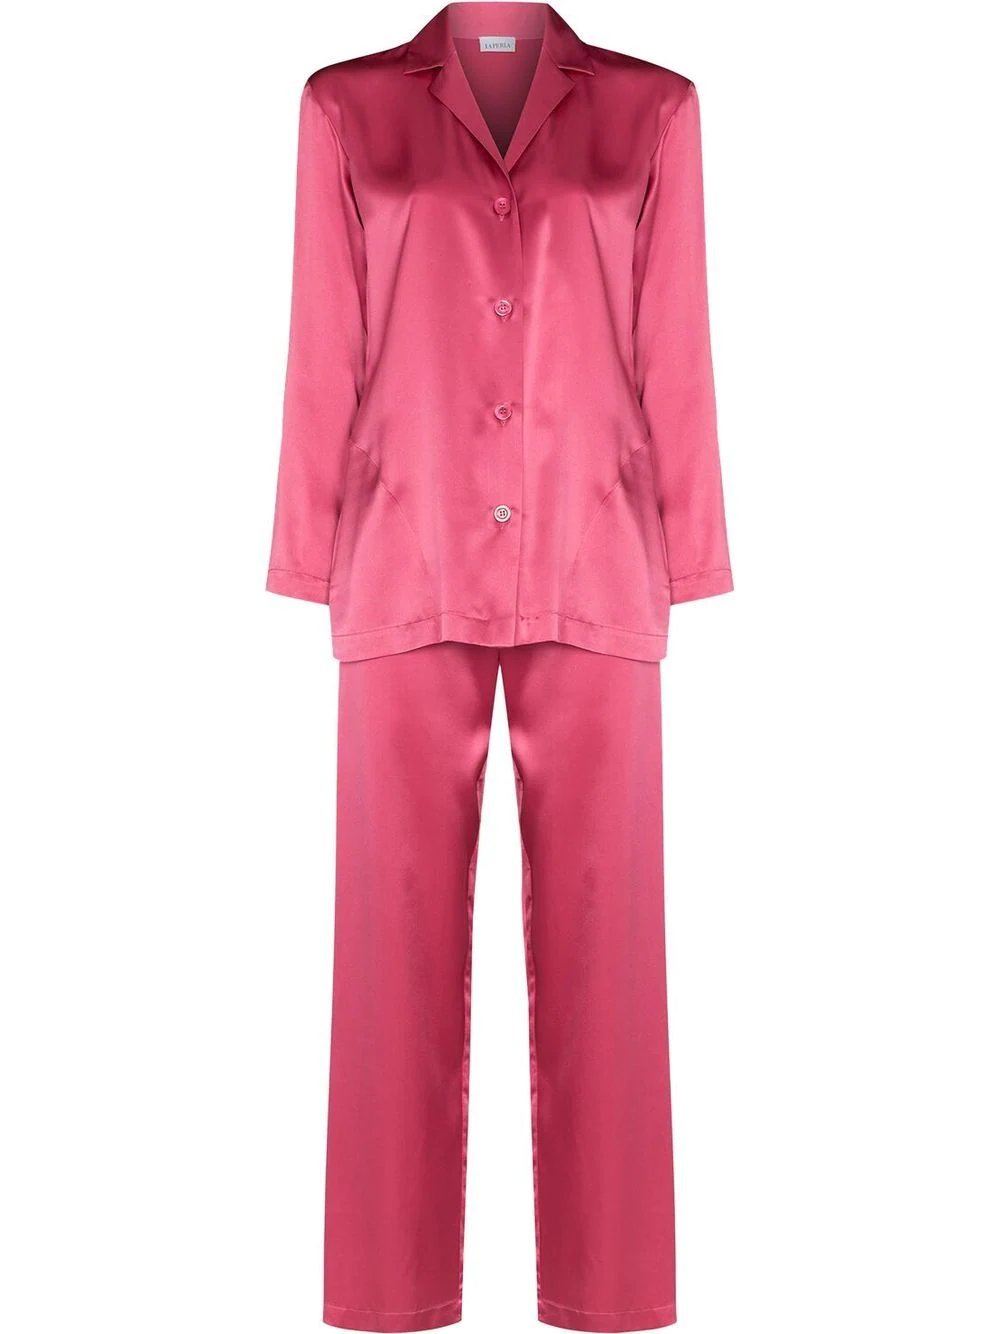 Где купить розовые пижамы, как у Селены Гомес и Николы Пельтц?